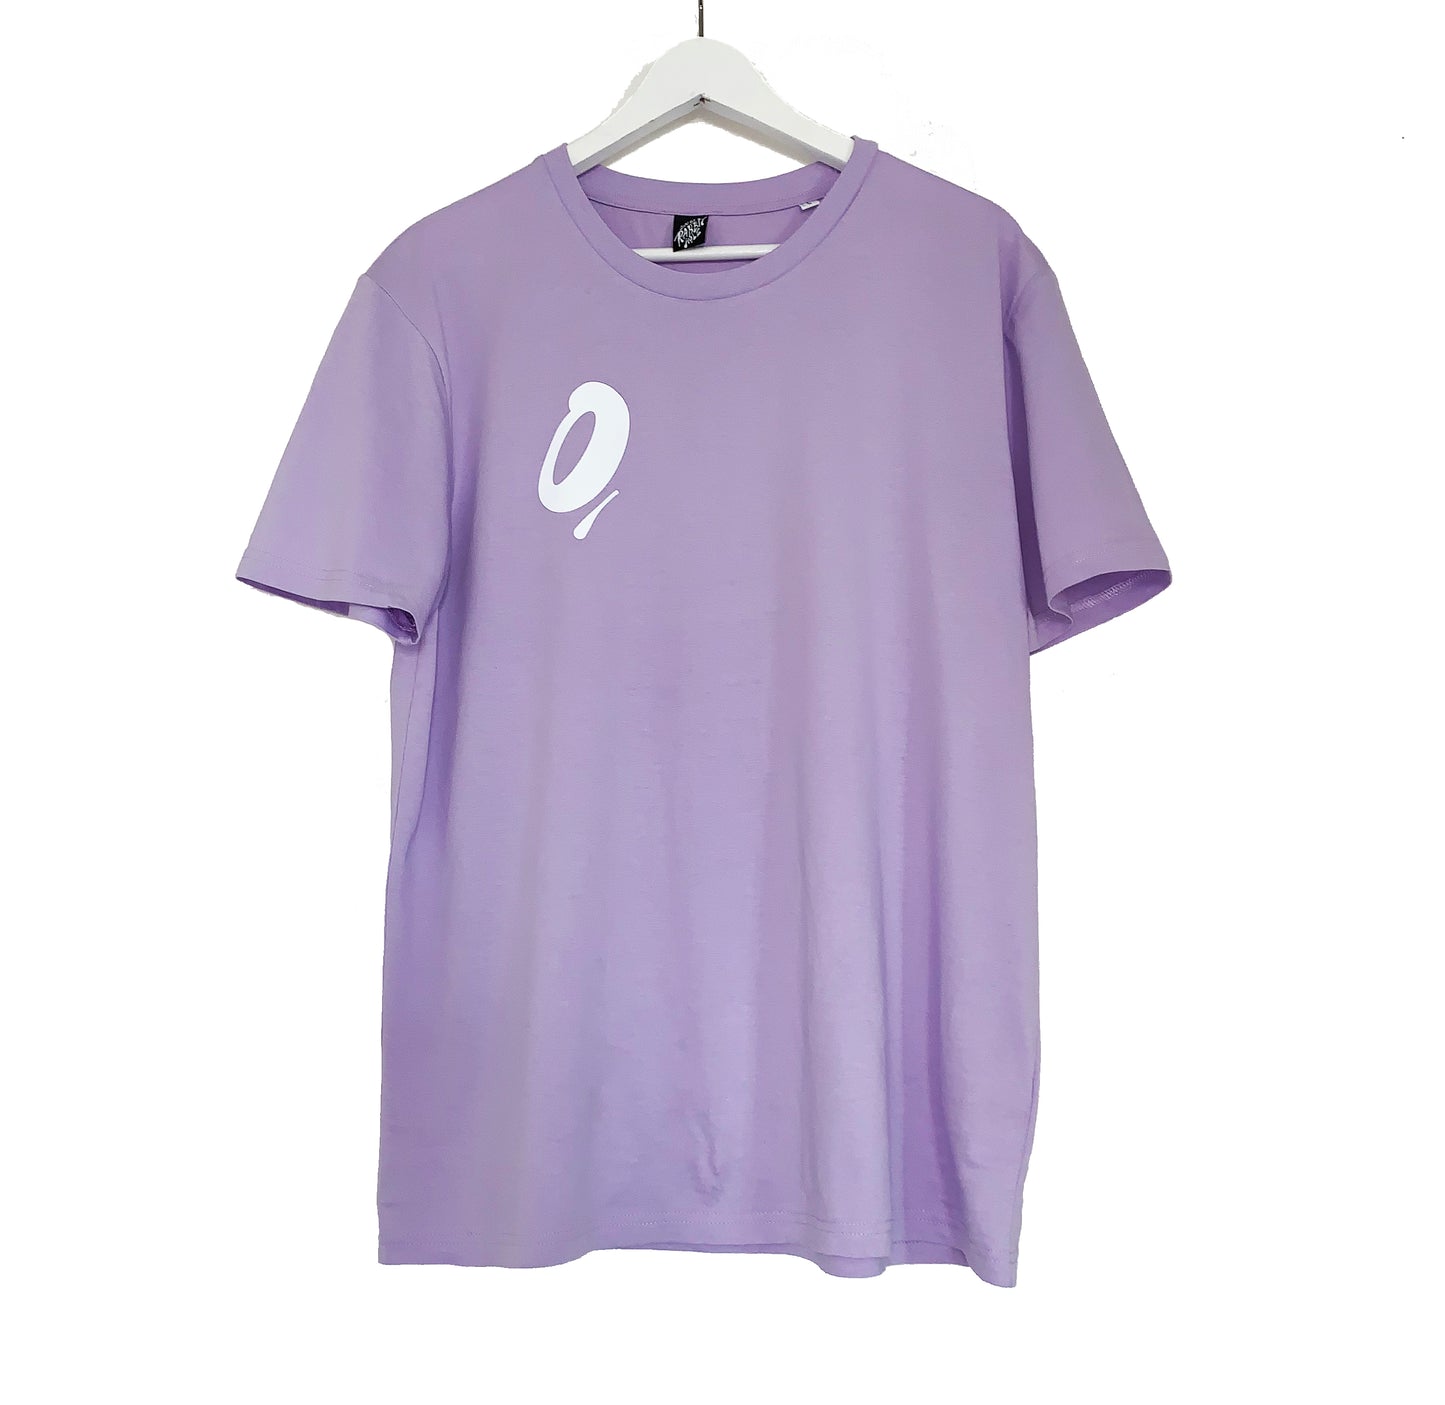 DTRH Shirt Lavender